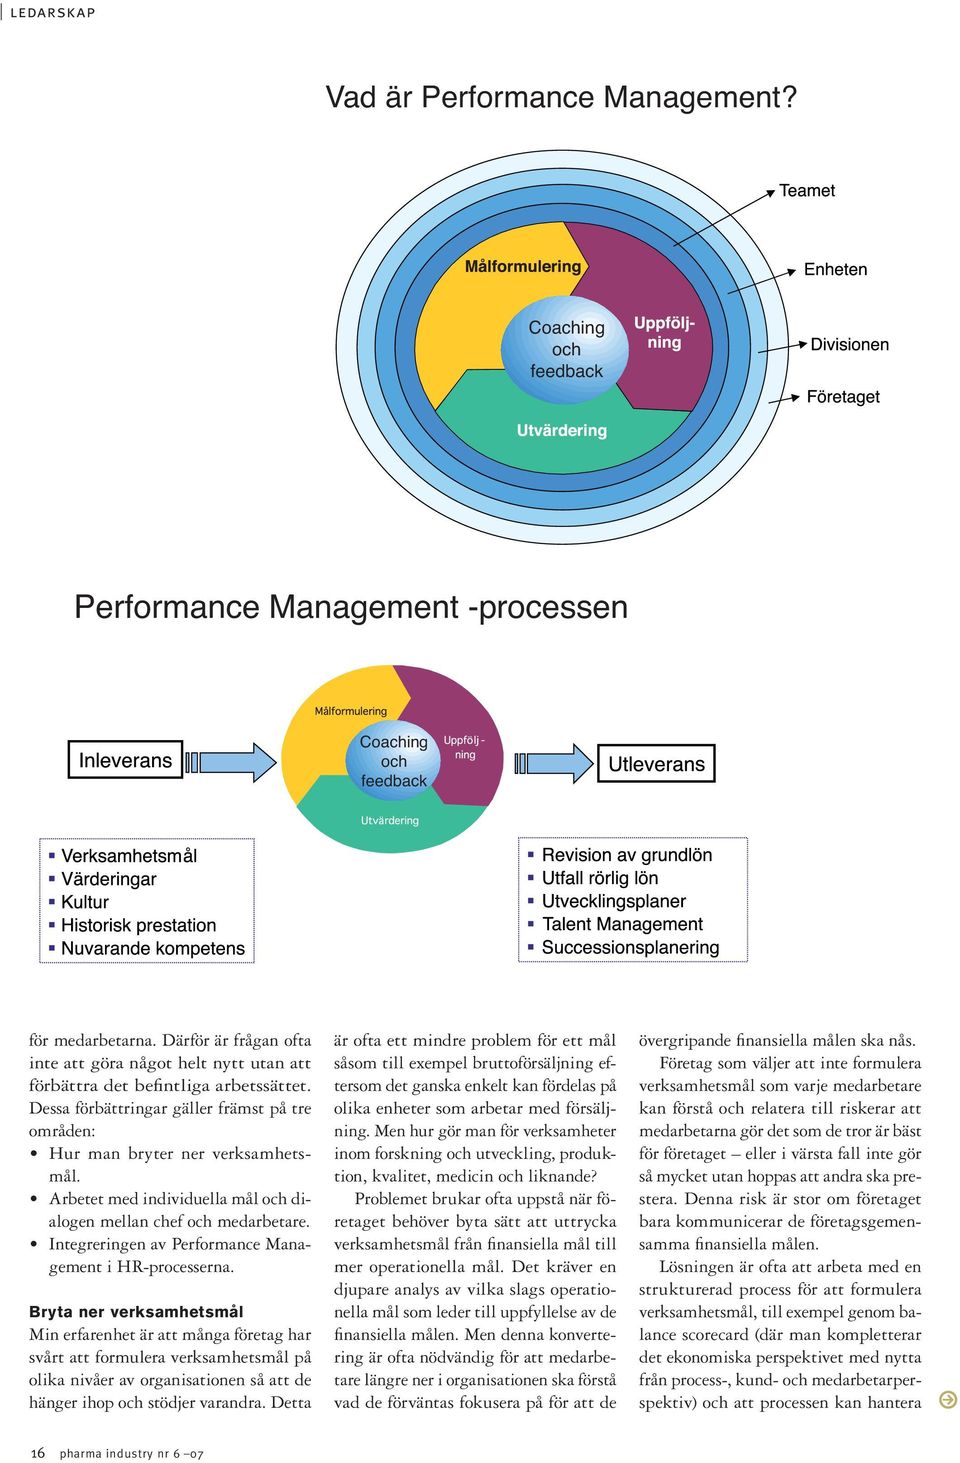 Arbetet med individuella mål och dialogen mellan chef och medarbetare. Integreringen av Performance Management i HR-processerna.